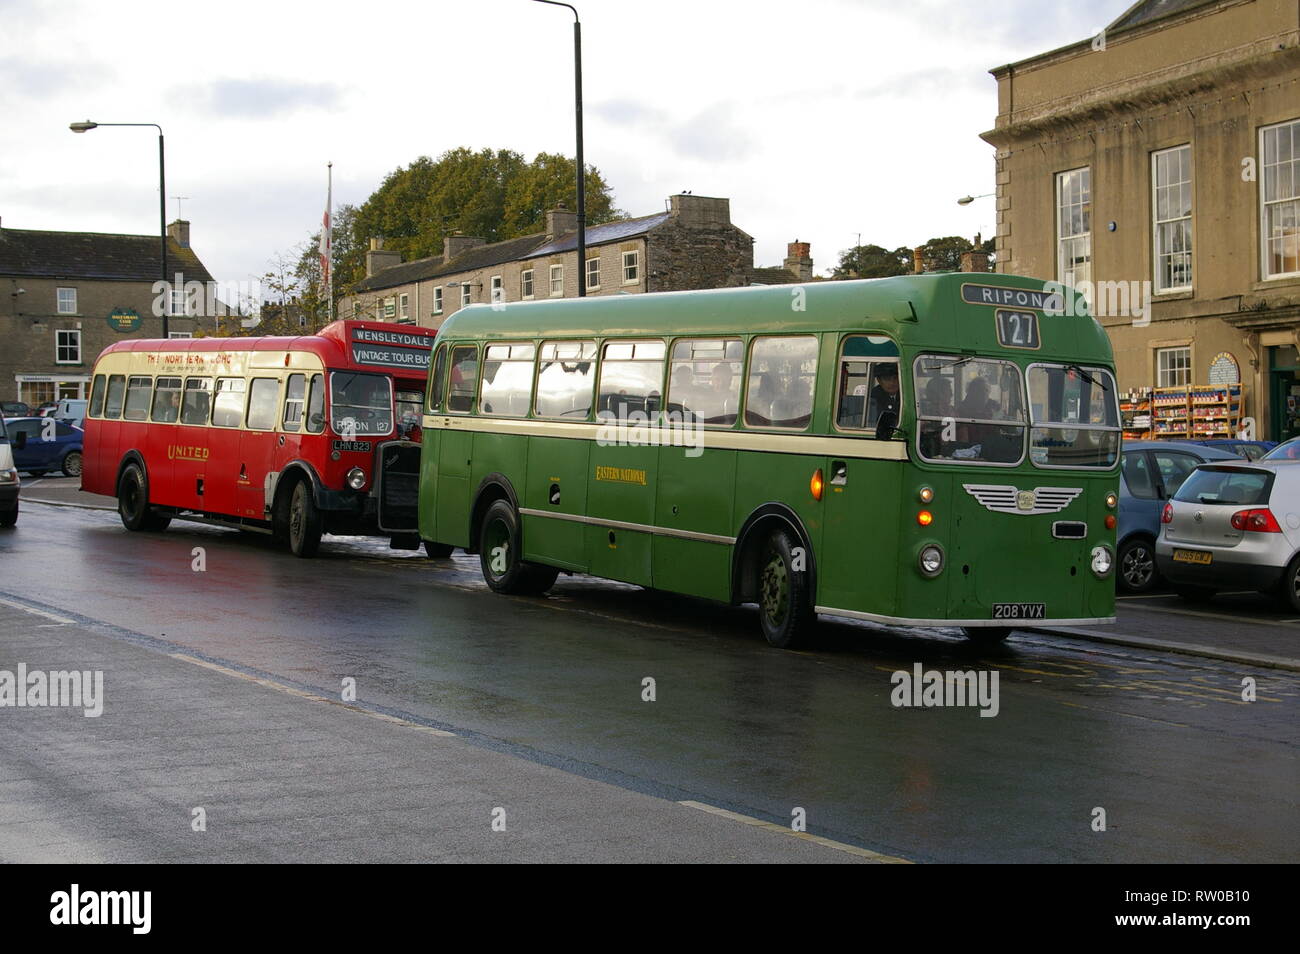 Vintage buses / coaches, Leyburn, North Yorkshire, United Kingdom Stock Photo